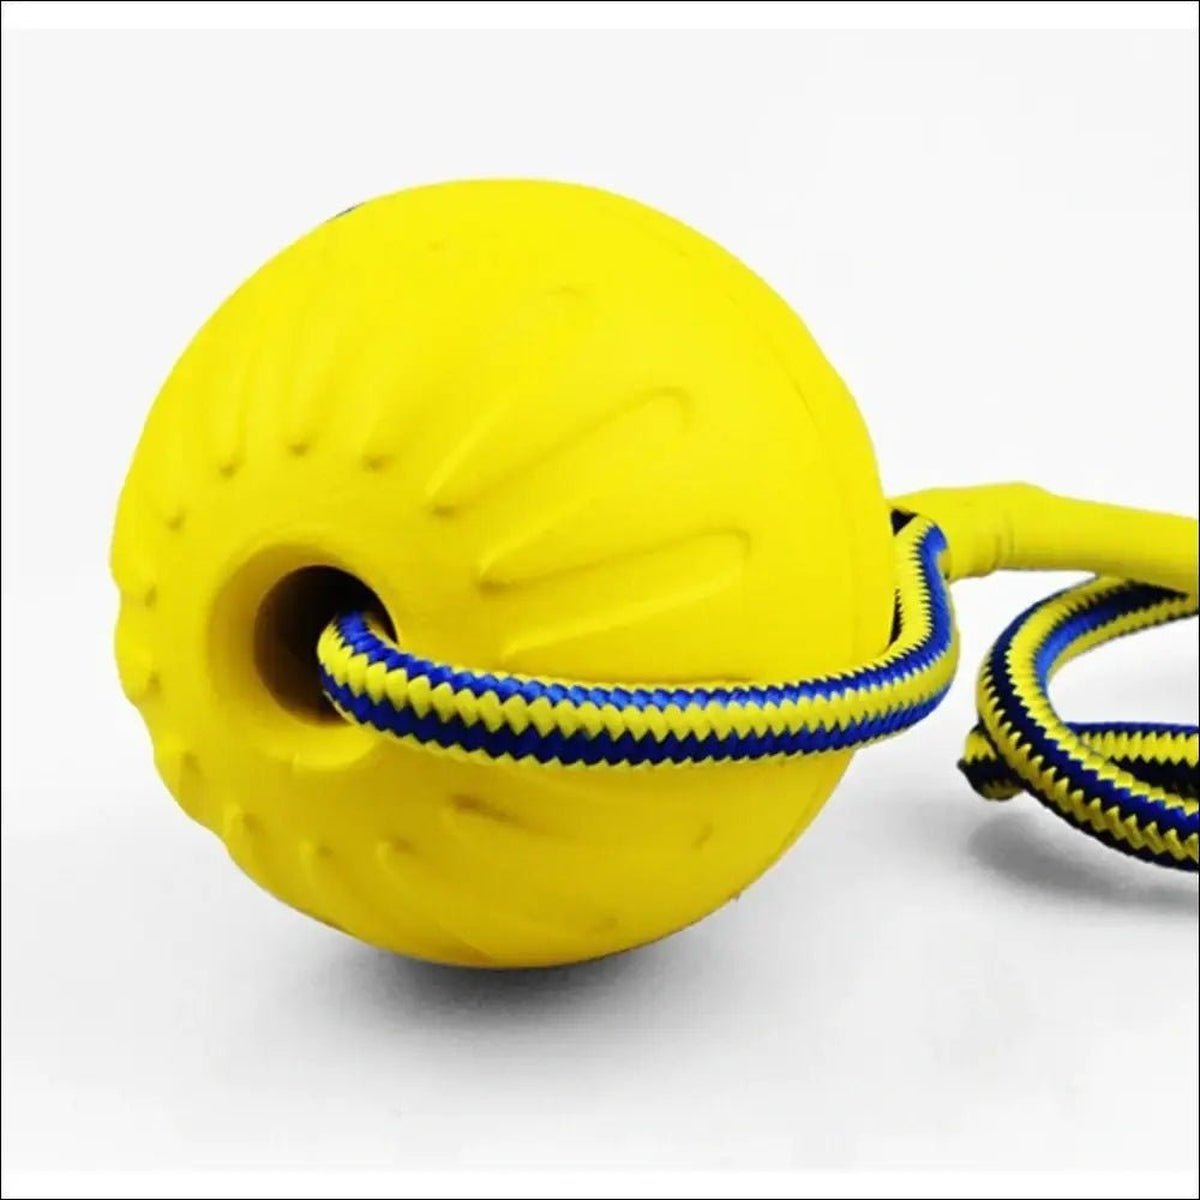 Jouet D'entraînement En Caoutchouc Pour Chiens - CJJJCWGY00762 - Rope ball - 7cm - Balles - Chienalafolie